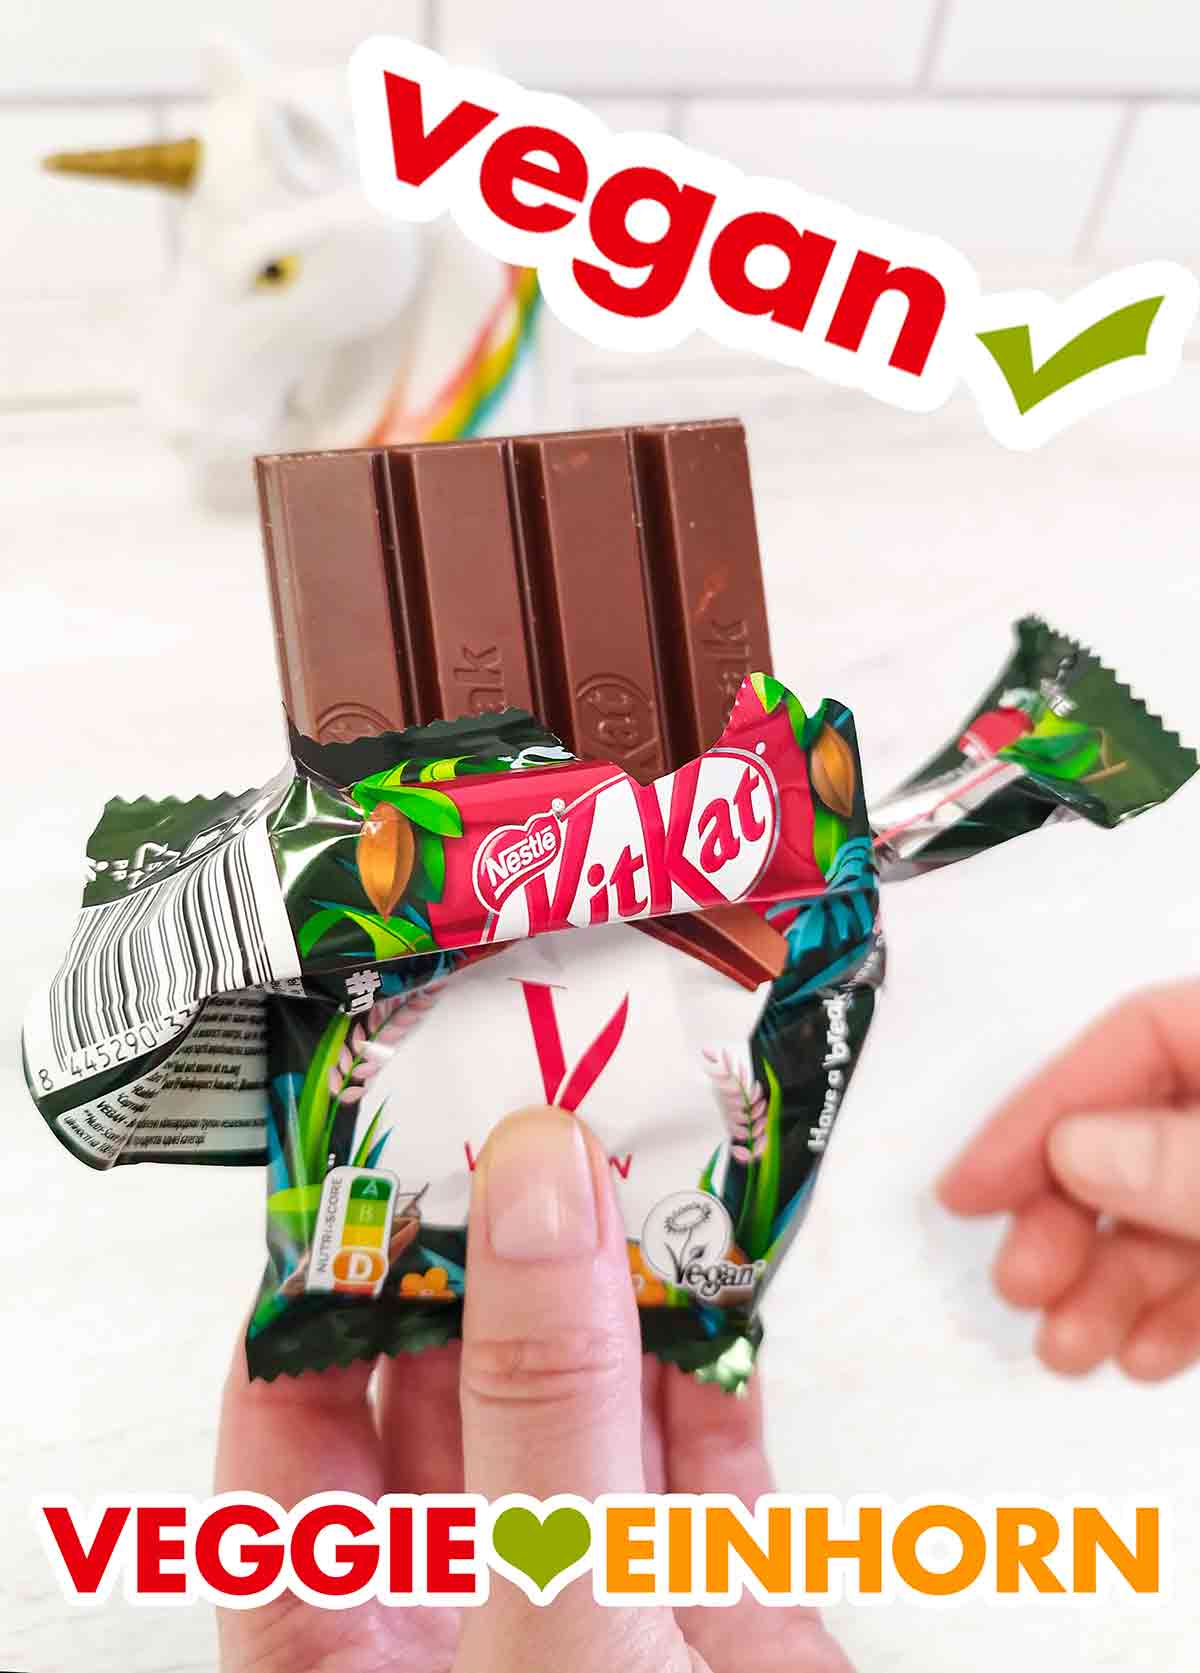 Veganes KitKat in der geöffneten Folie